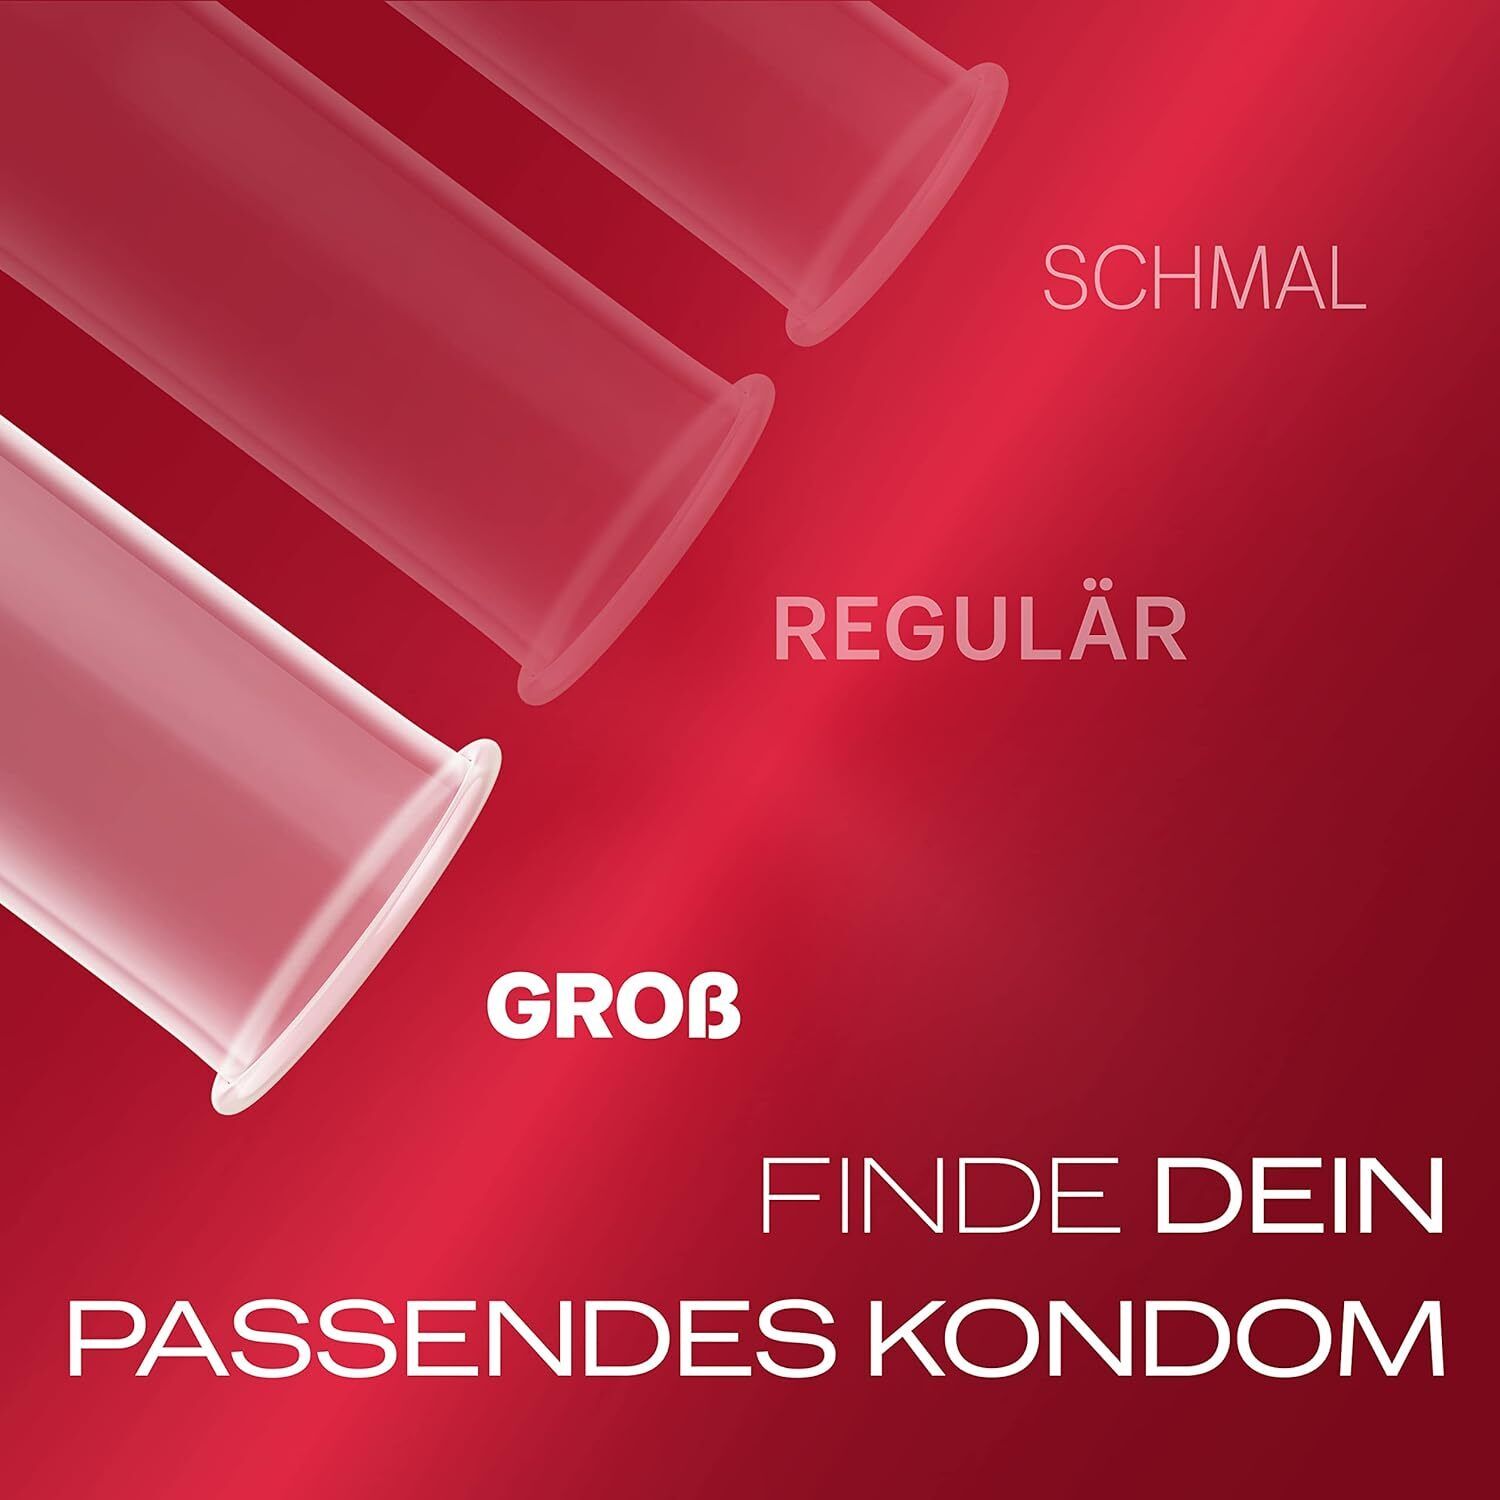 Durex Gefühlsecht Slim Kondome schlanke Passform (8 Stück)